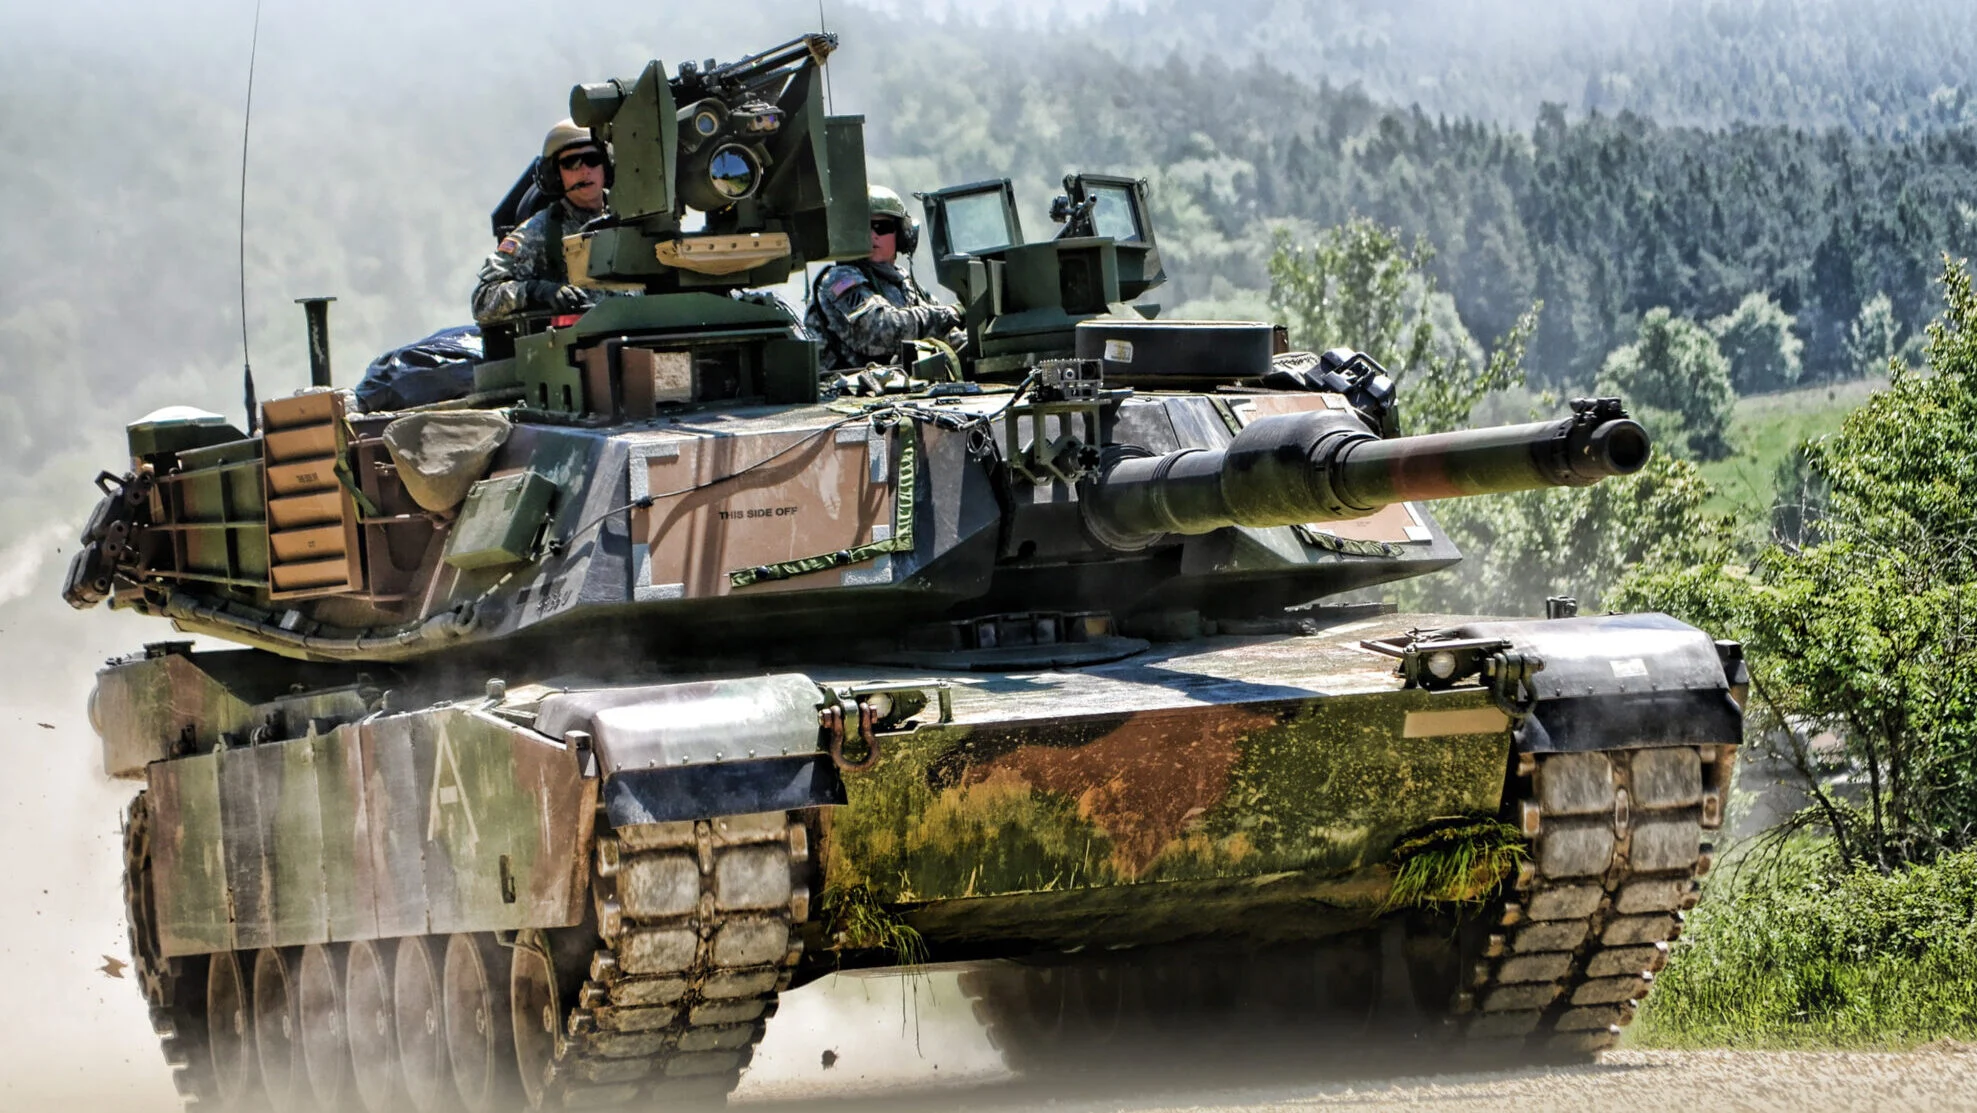 The General Dynamics M1A2 SEPv3 Abrams tank.